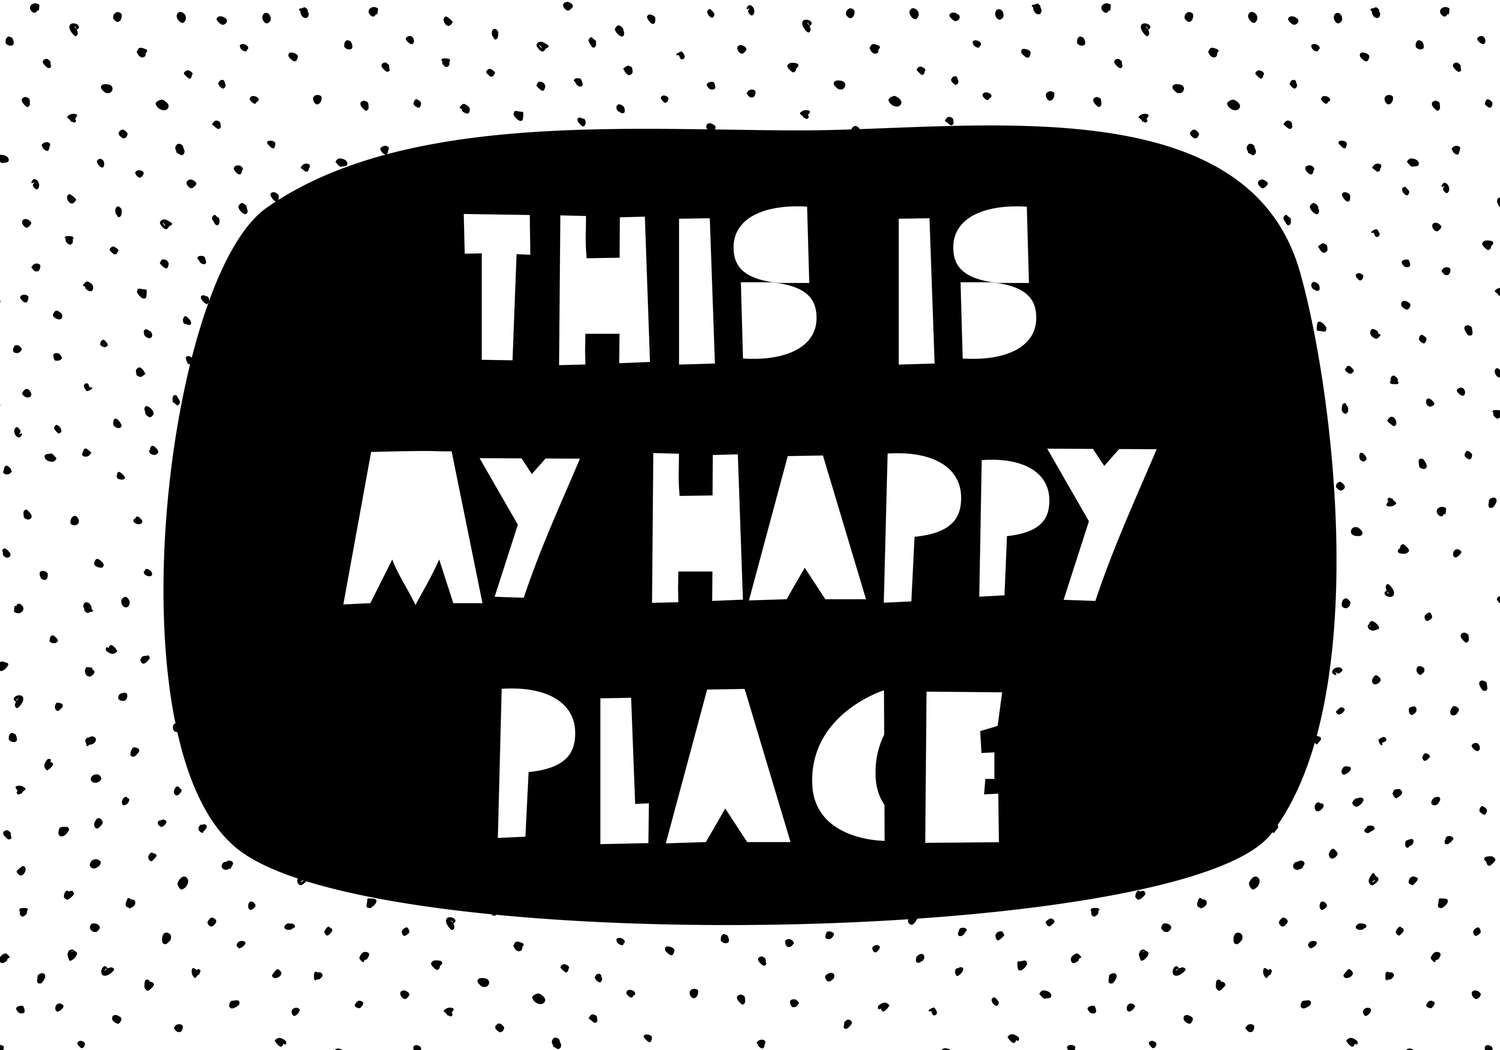             Digital behang voor kinderkamer met opschrift "This is my happy place" - Glad & mat vlies
        